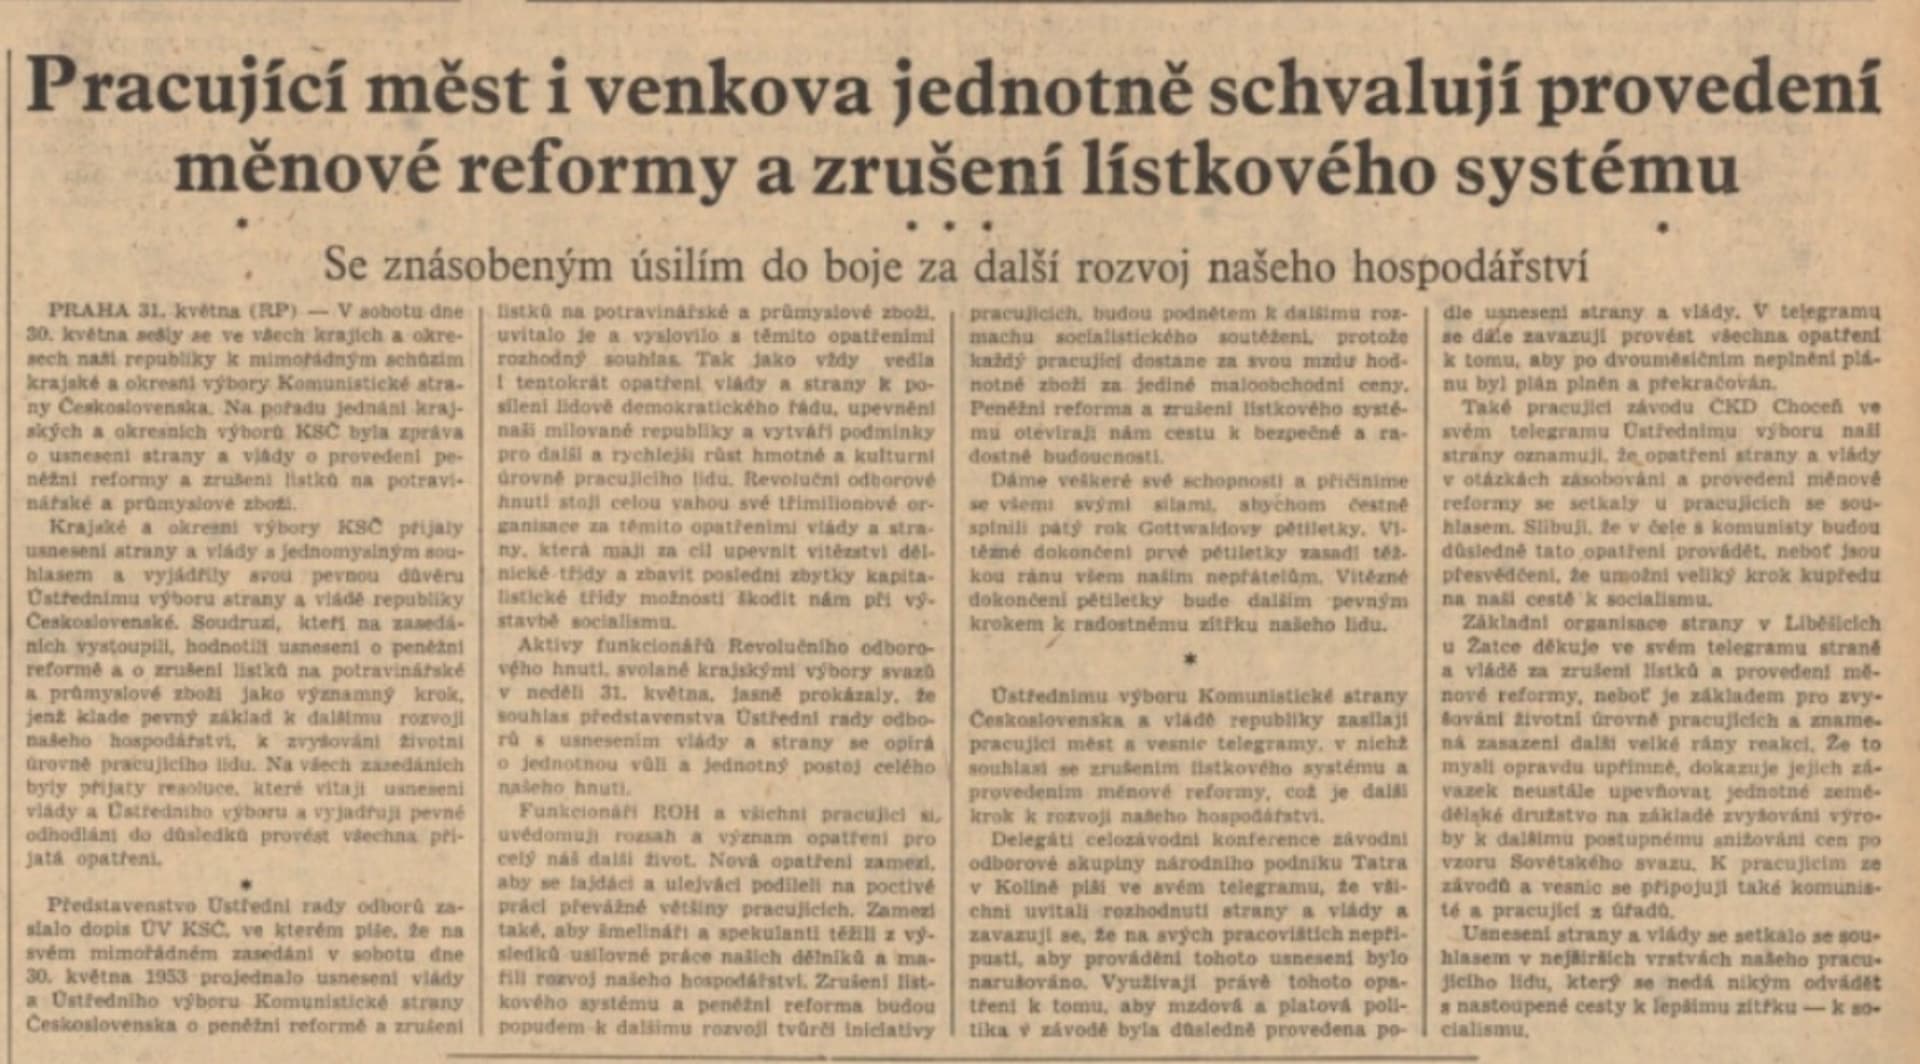 Rudé právo ujišťuje, že lid přijal reformu s nadšením. V Praze, Ostravě, Bohumíně i jinde se ale proti peněžní krádeži demonstrovalo.